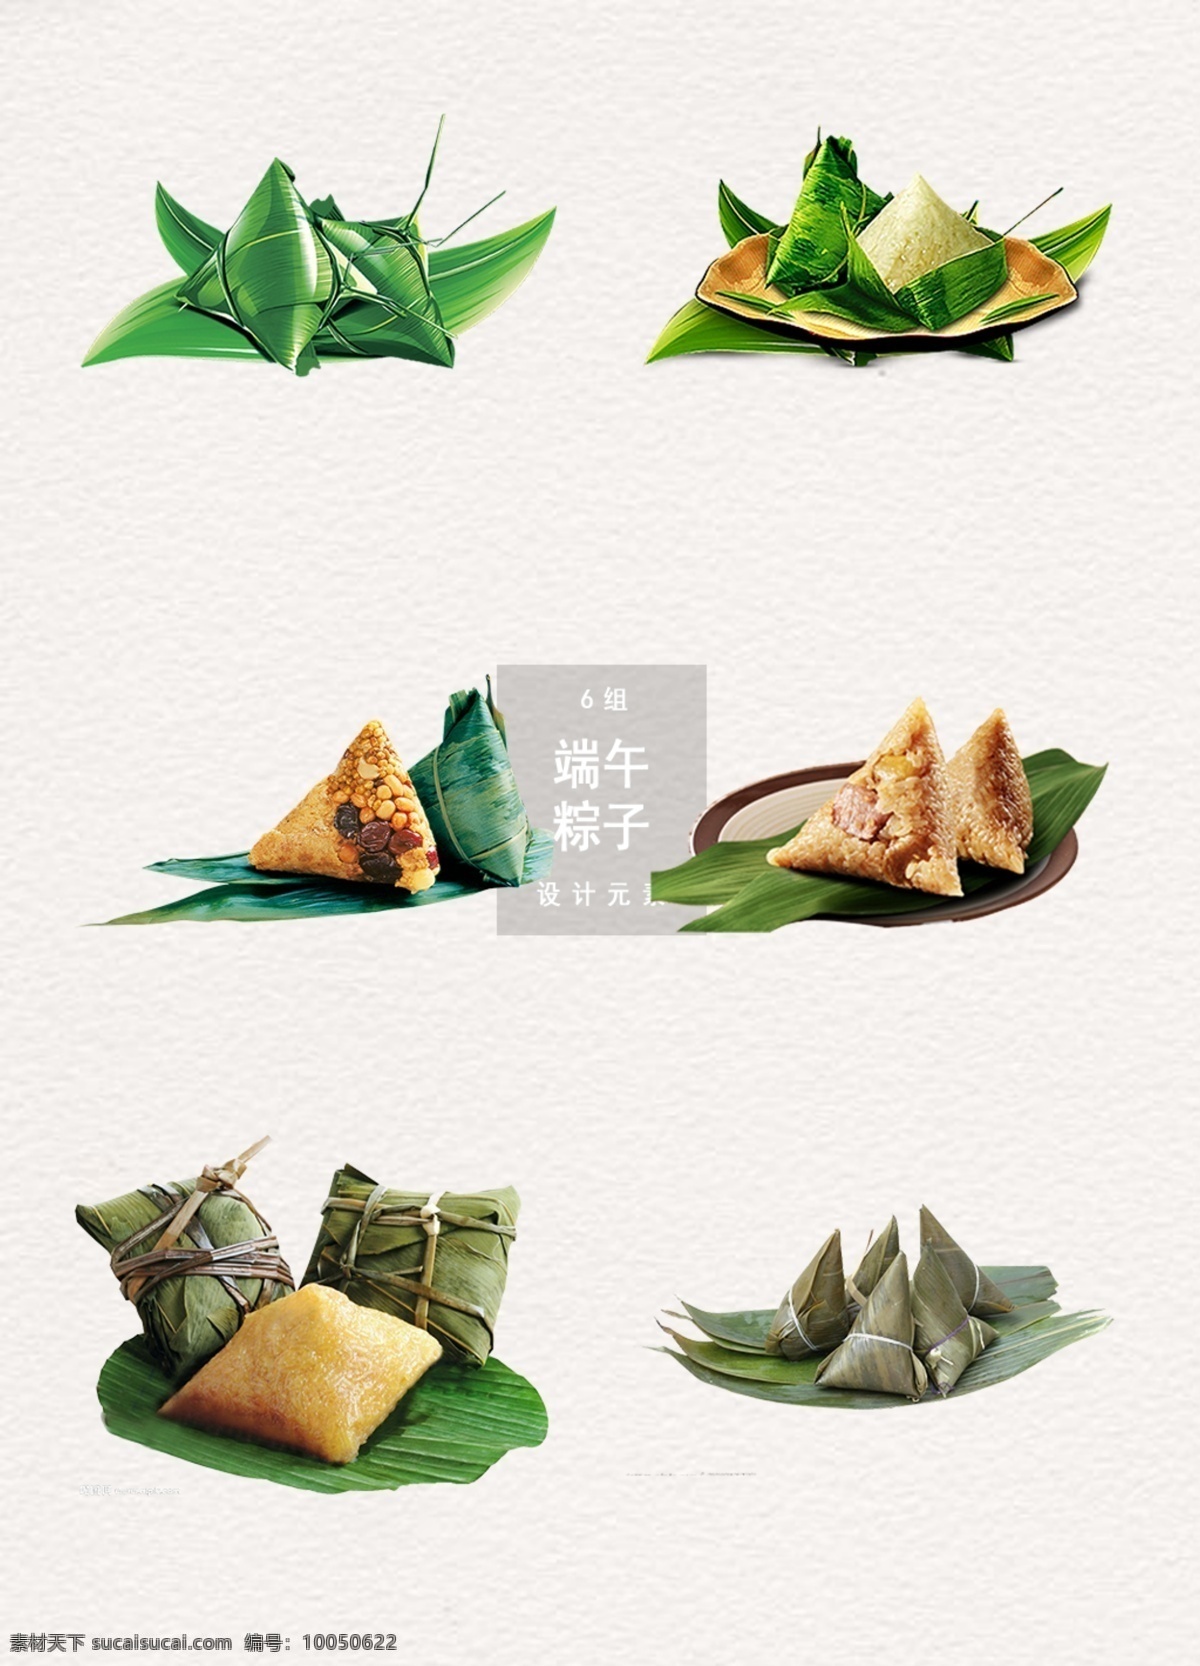 端午节 粽子 节日 设计素材 端午 元素 食物 节日元素